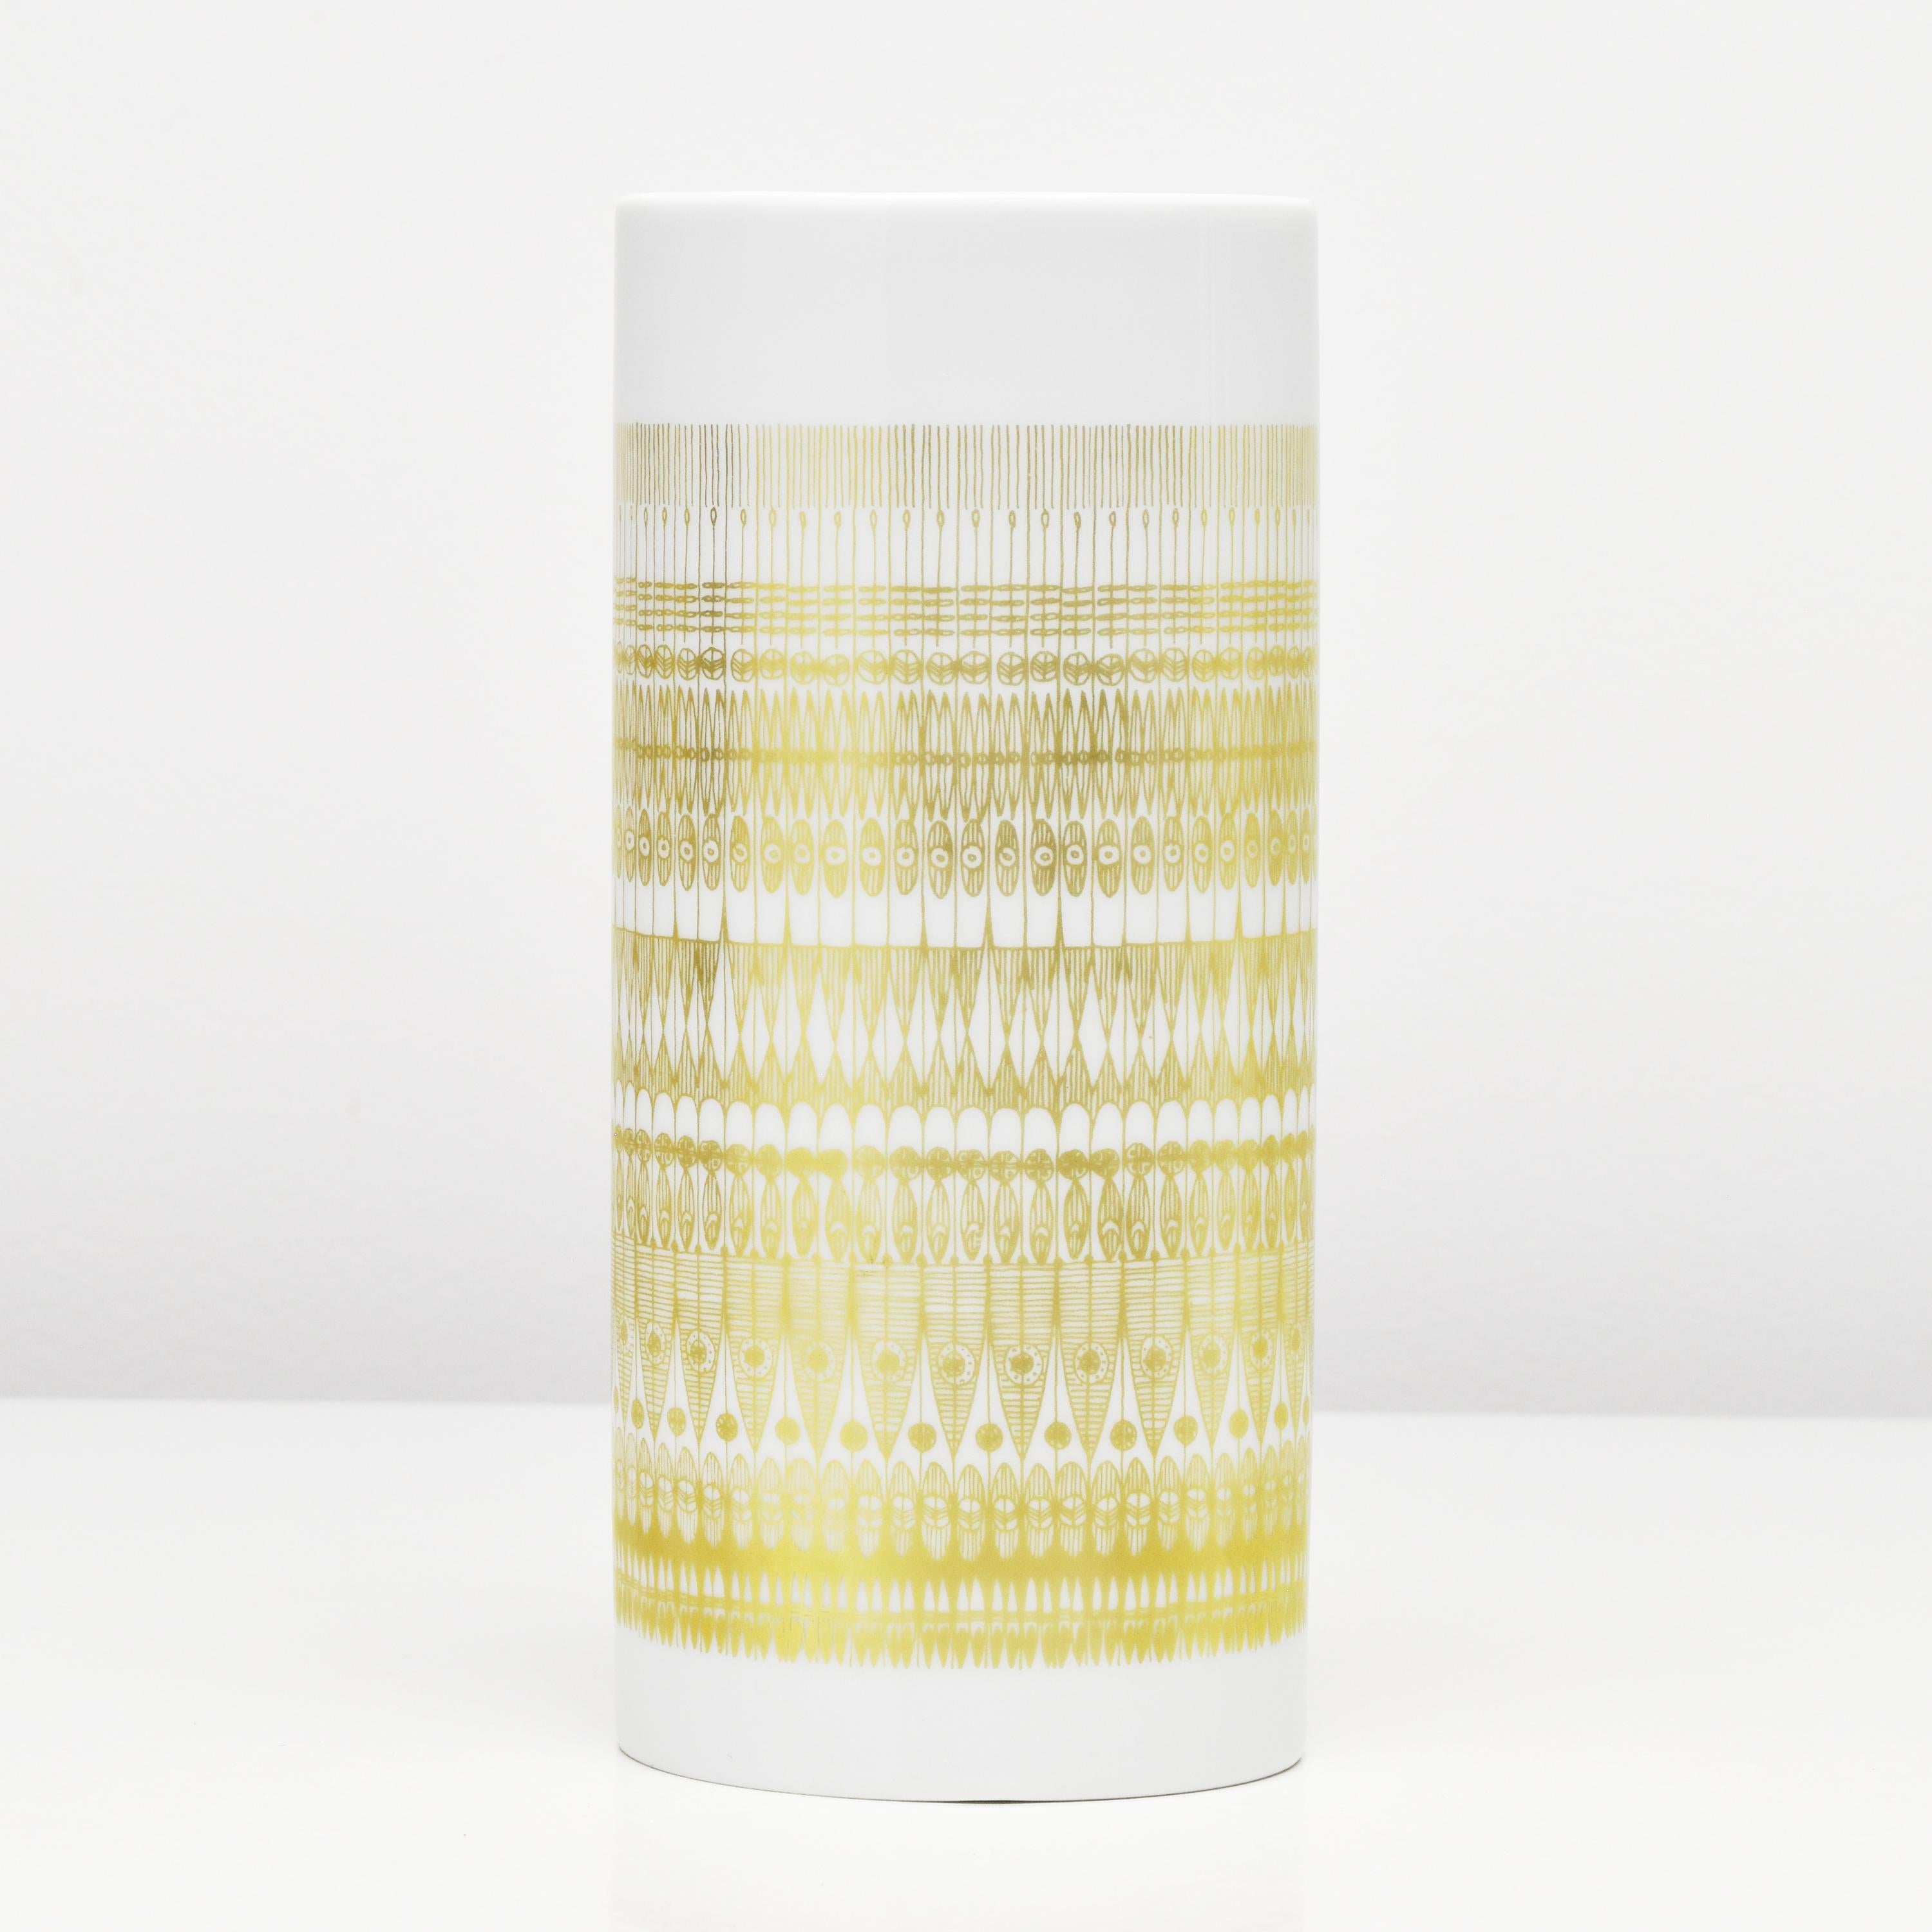 Un élégant vase en porcelaine conçu par Hans Theo Baumann pour Rosenthal. Le vase a une forme ovale, avec une glaçure brillante qui crée une surface lisse et polie, tandis que le décor doré mat crée un contraste subtil et met en valeur la forme